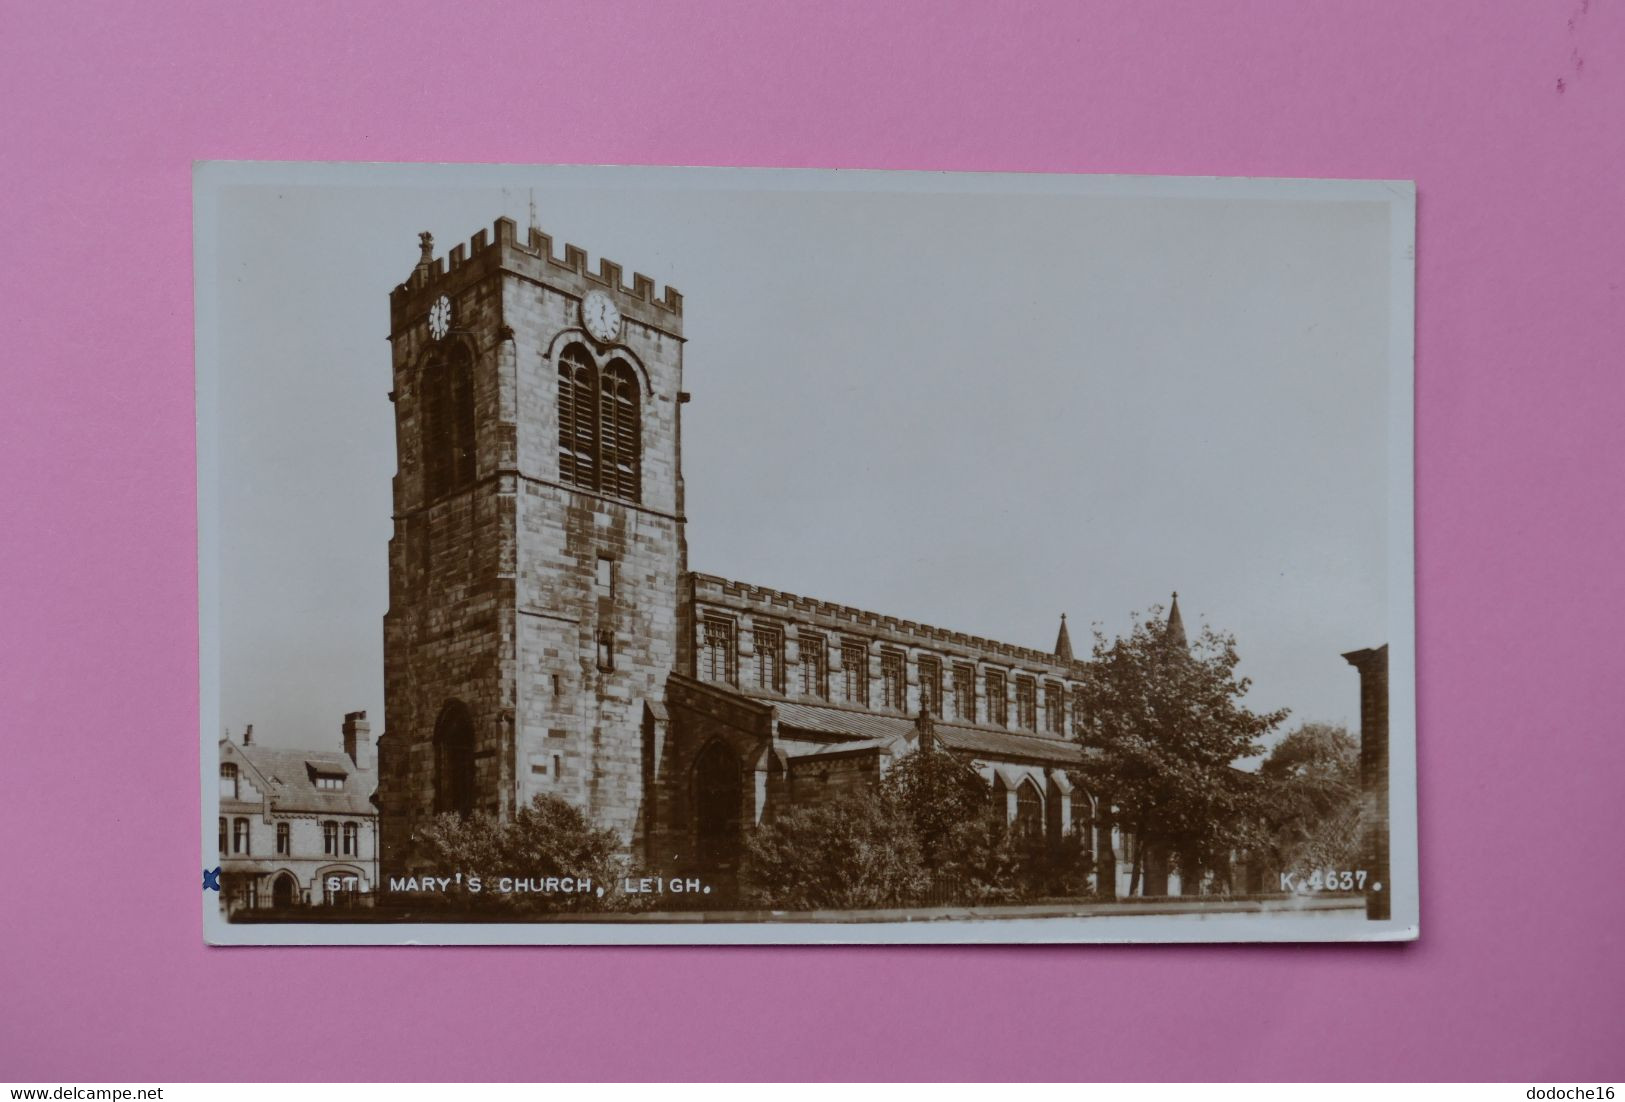 LEIGH - ST MARY'S CHURCH - Southend, Westcliff & Leigh